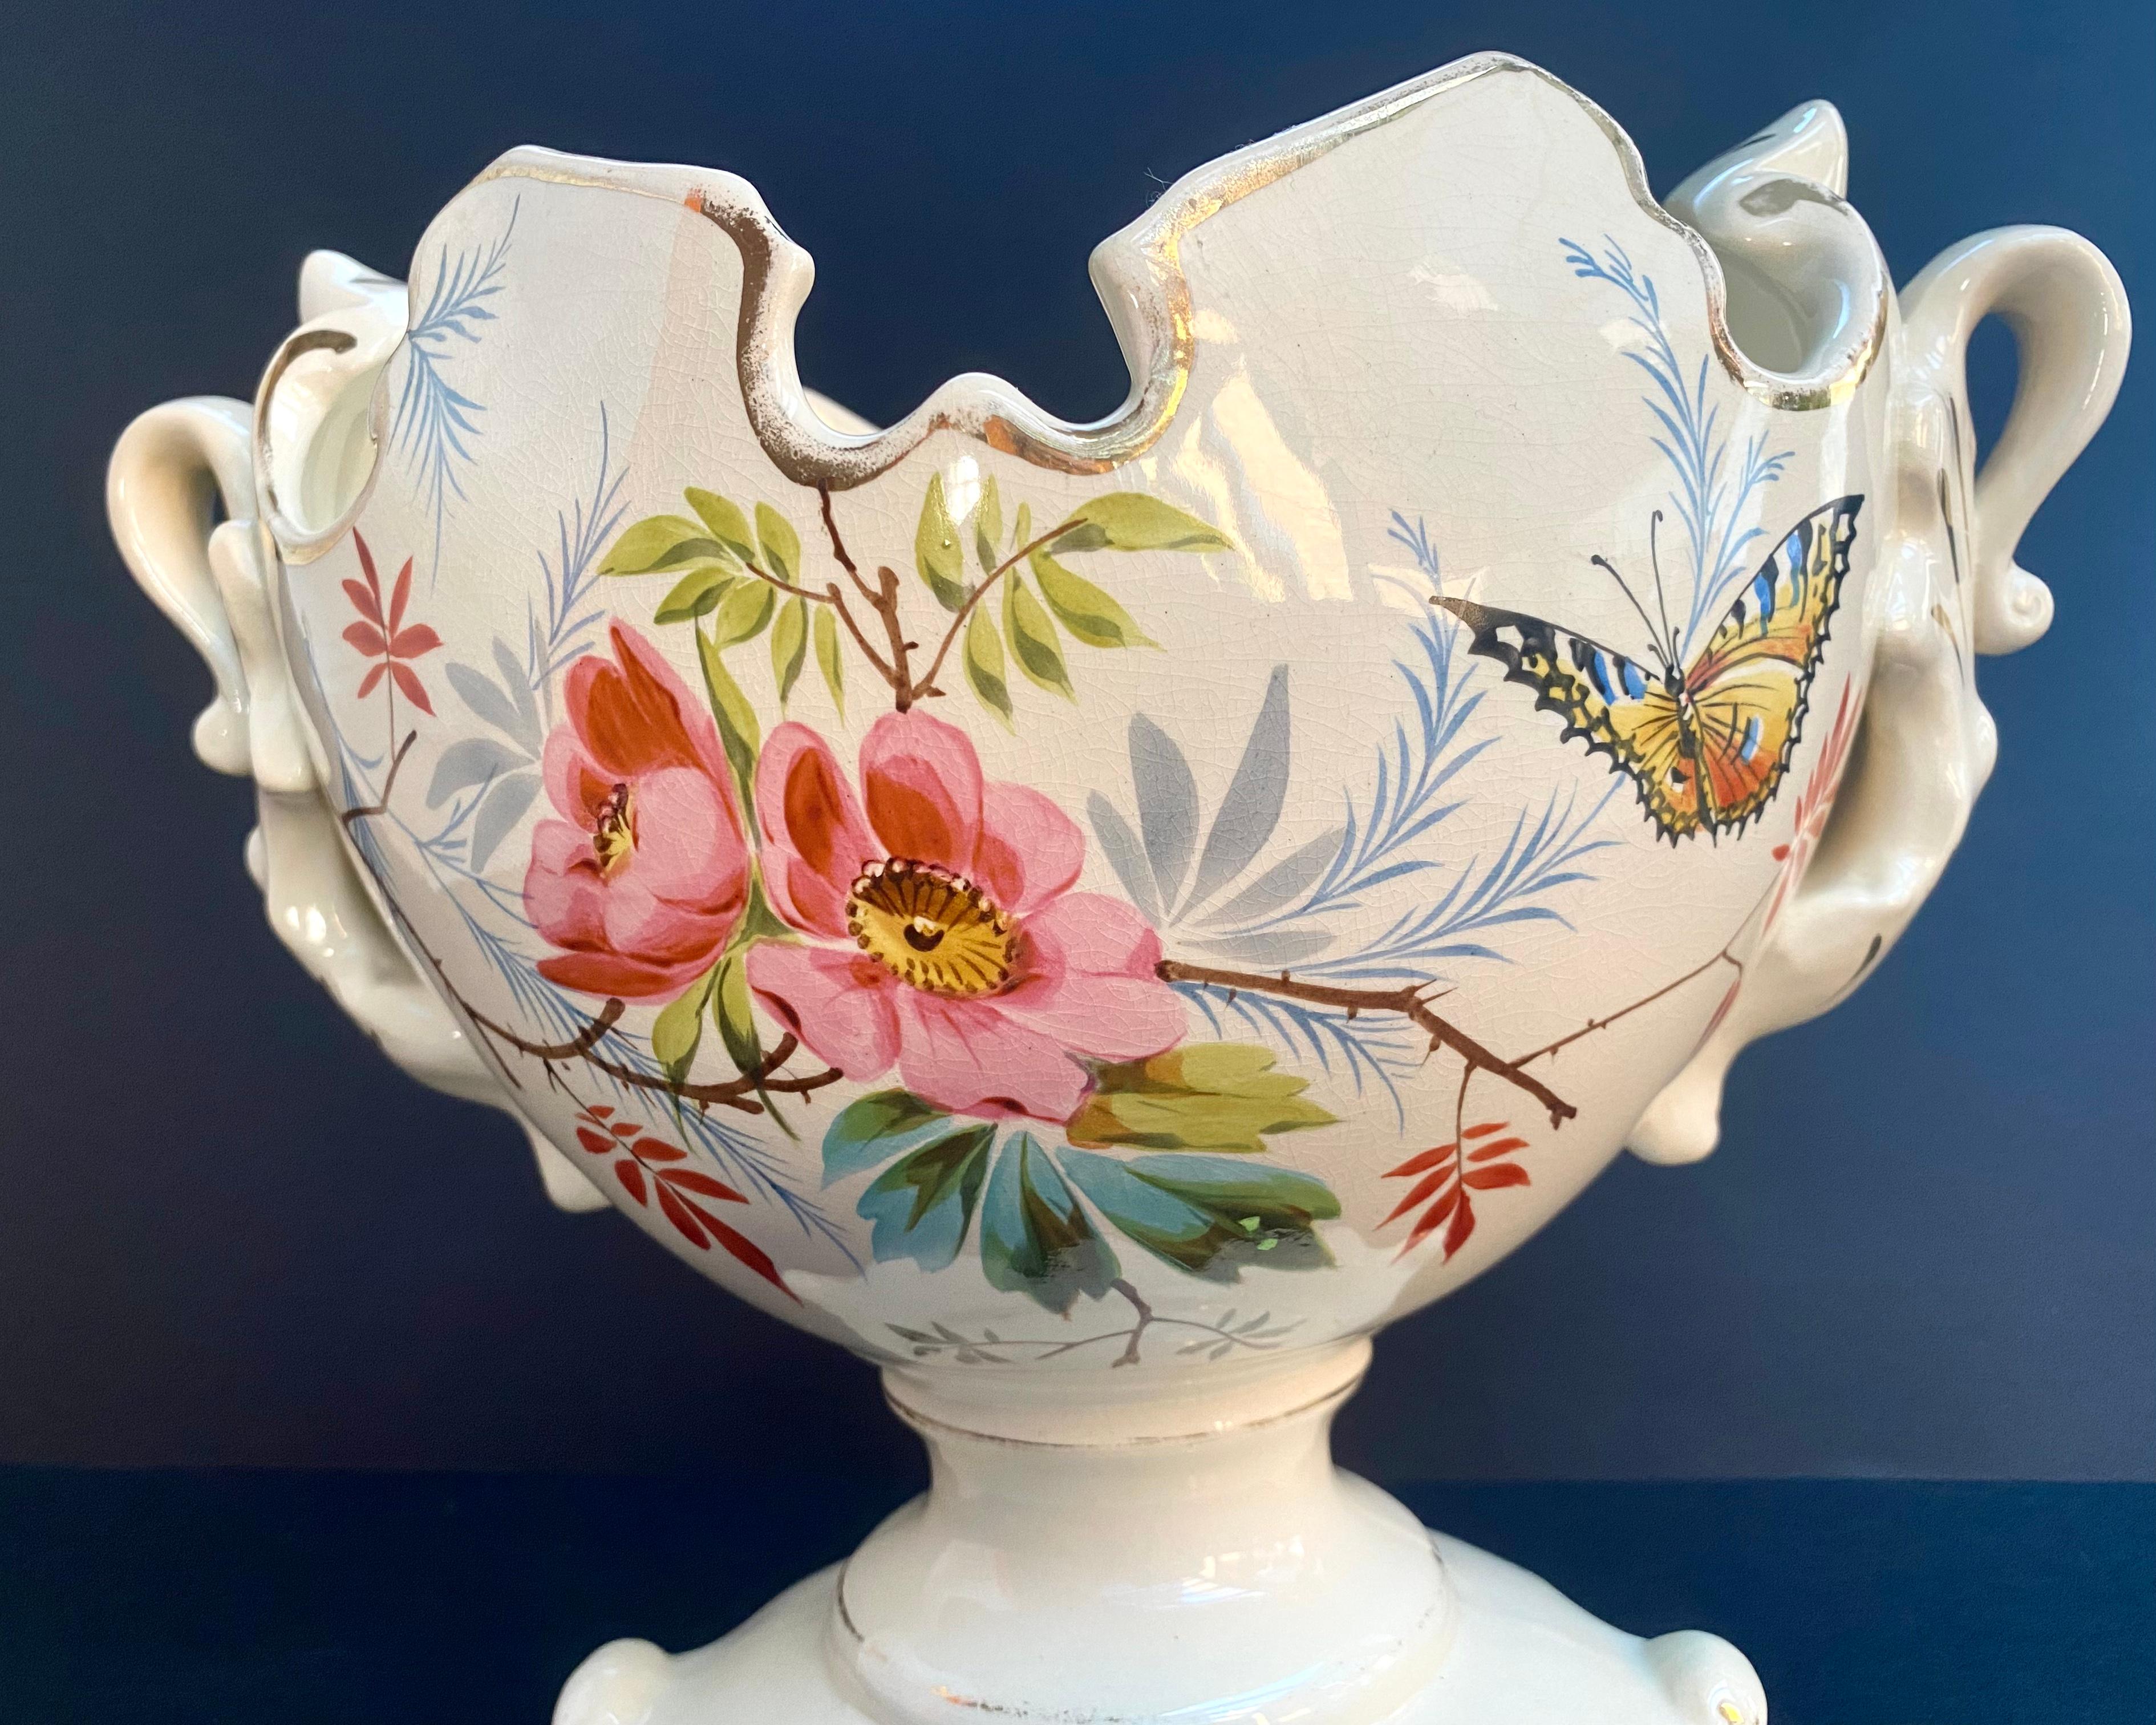 French Vintage Ceramic Planter, 1950 Floral Pattern Porcelain Vase For Sale 2